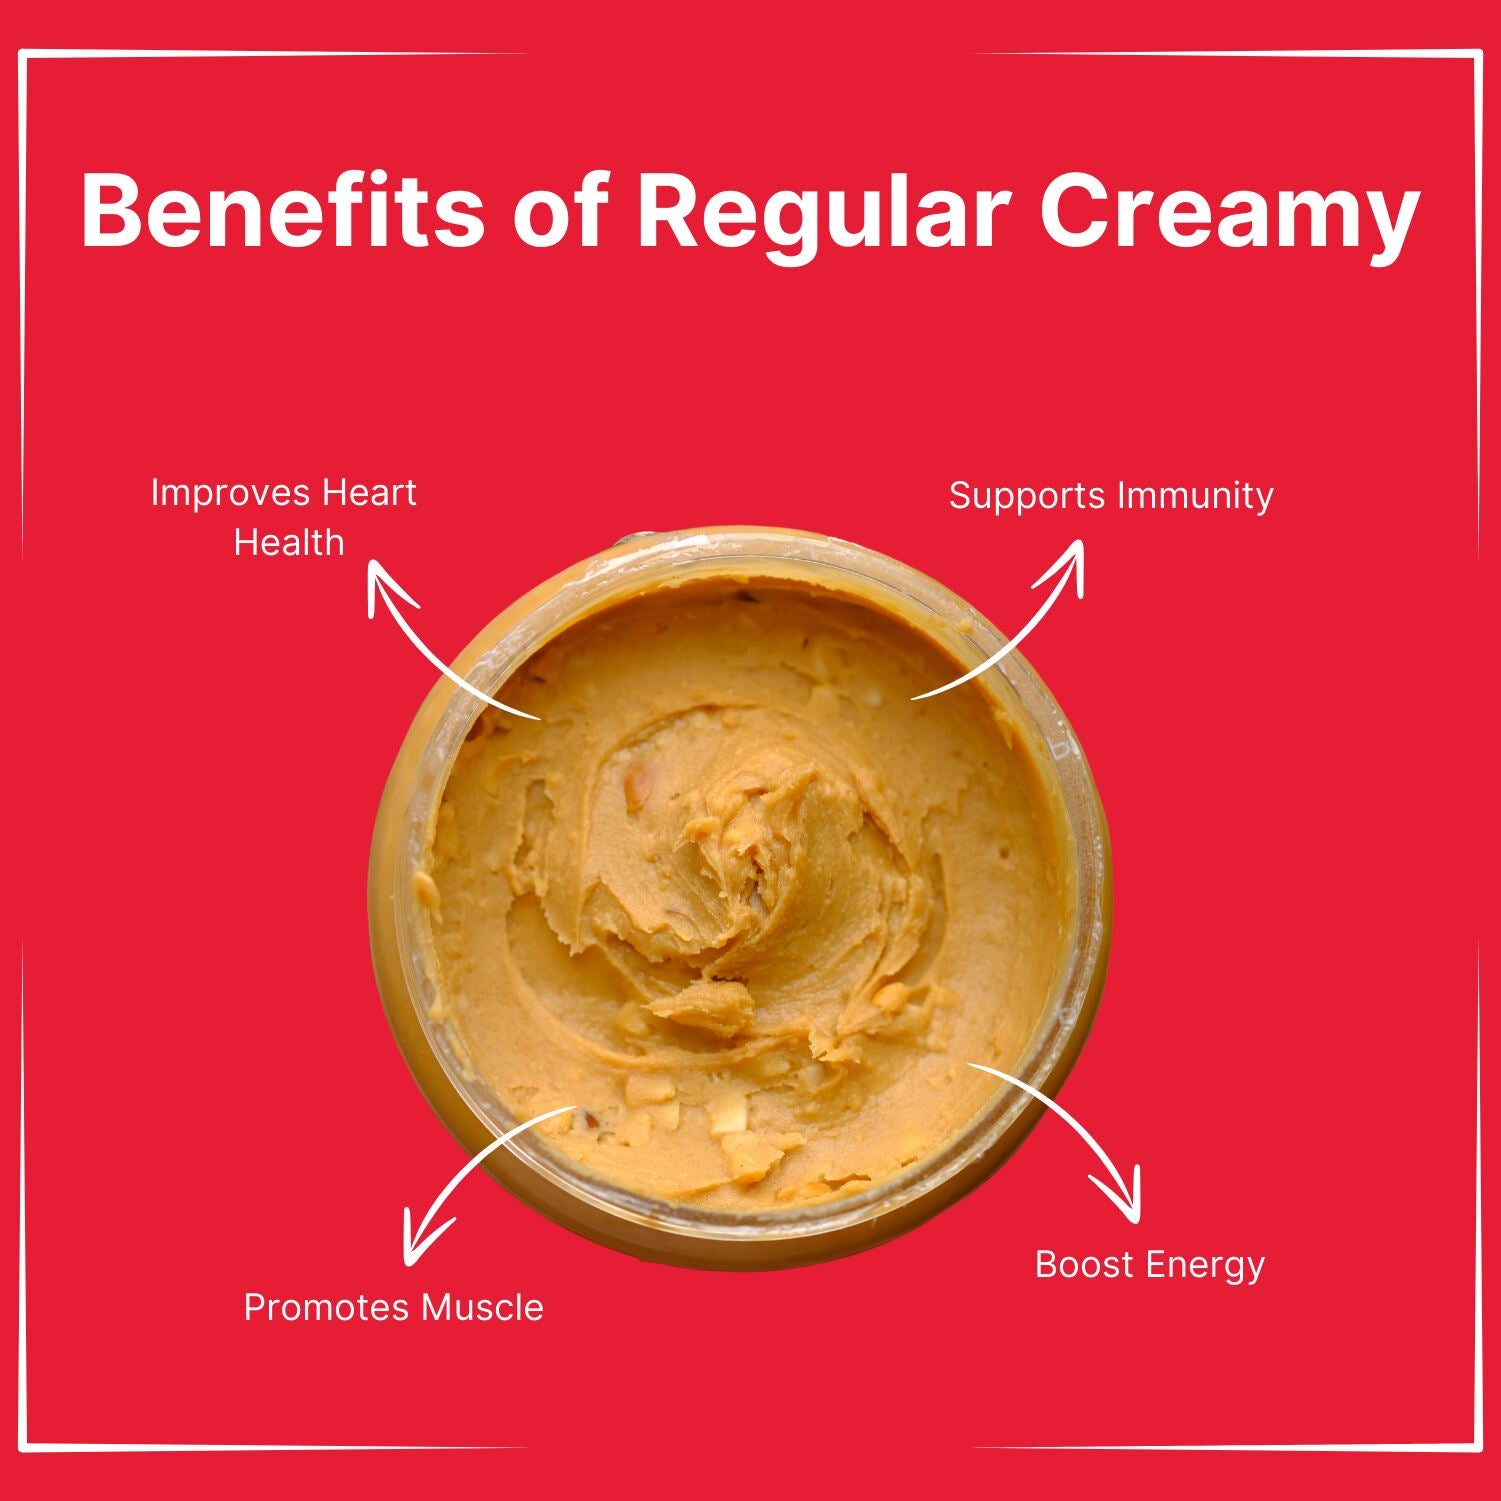 Peanut Butter Regular Creamy flavor - 240gm